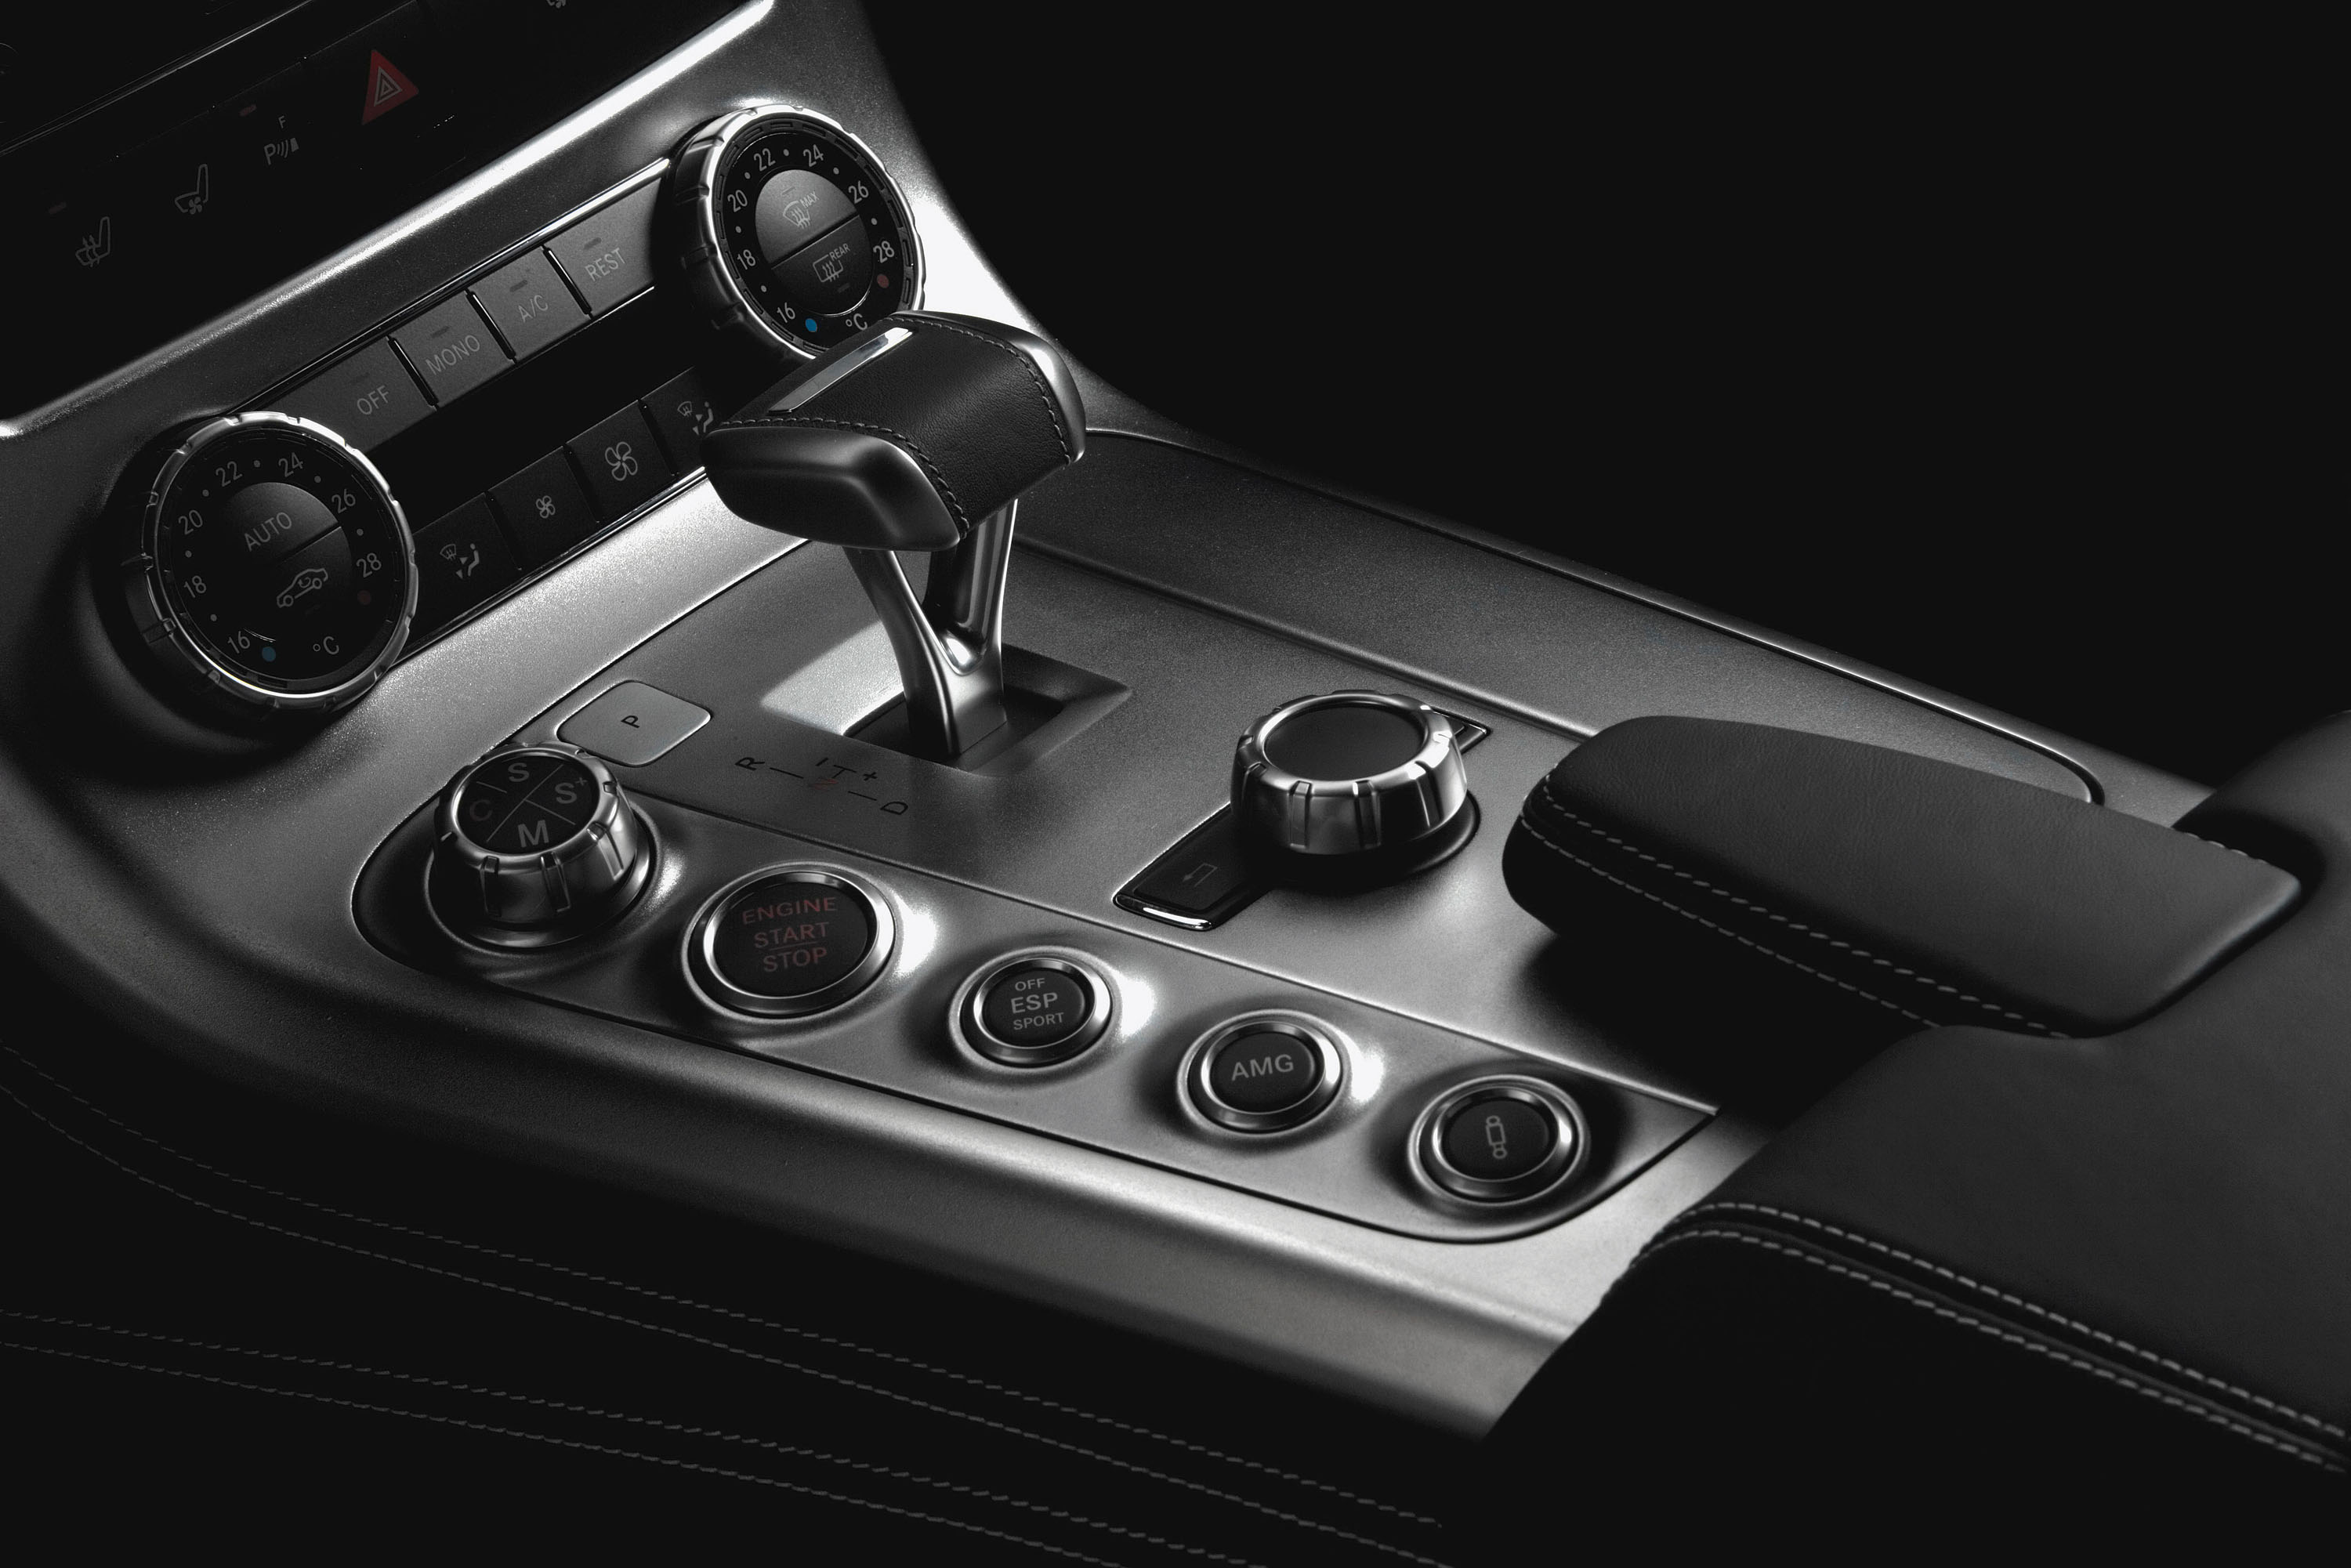 Mercedes-Benz SLS AMG Interior